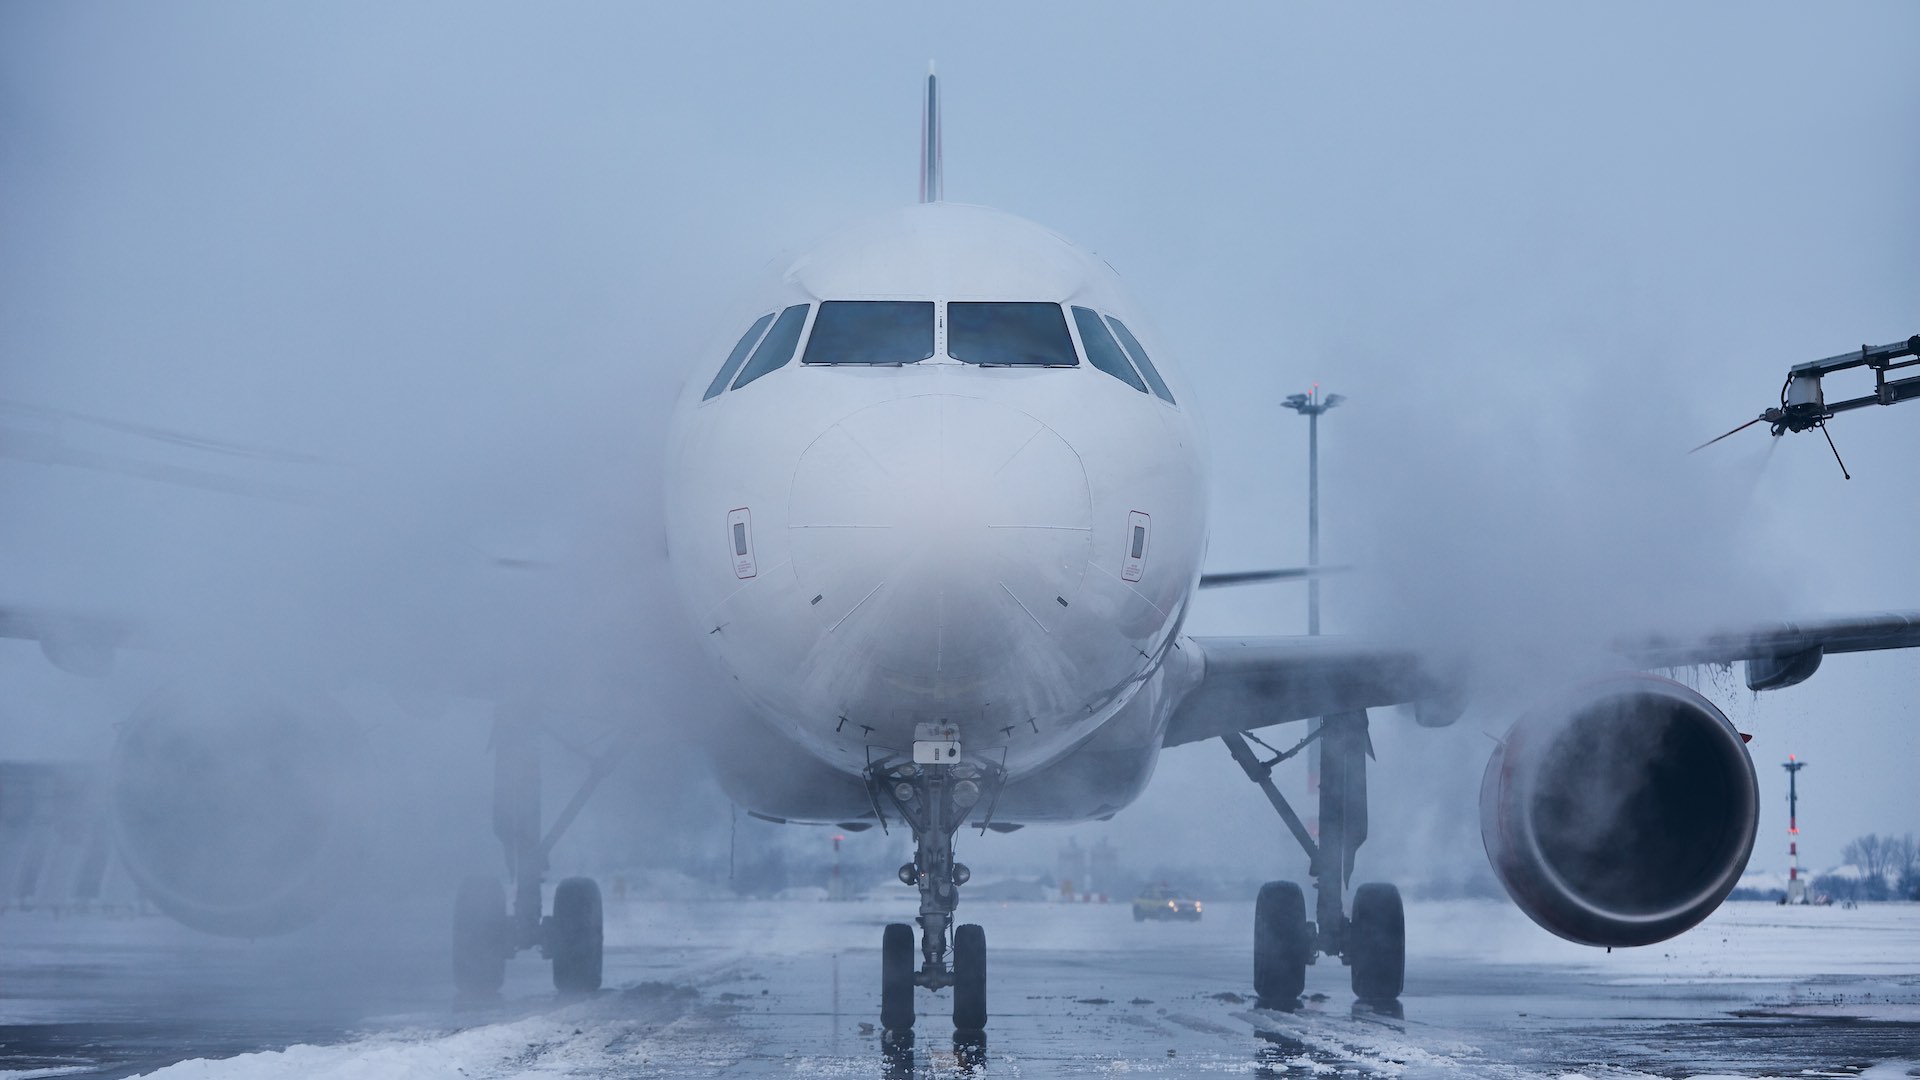 شدید برف باری کے باعث فرینکفرٹ ہوائی اڈے پر بڑے پیمانے پر پروازیں منسوخ ہو گئیں۔